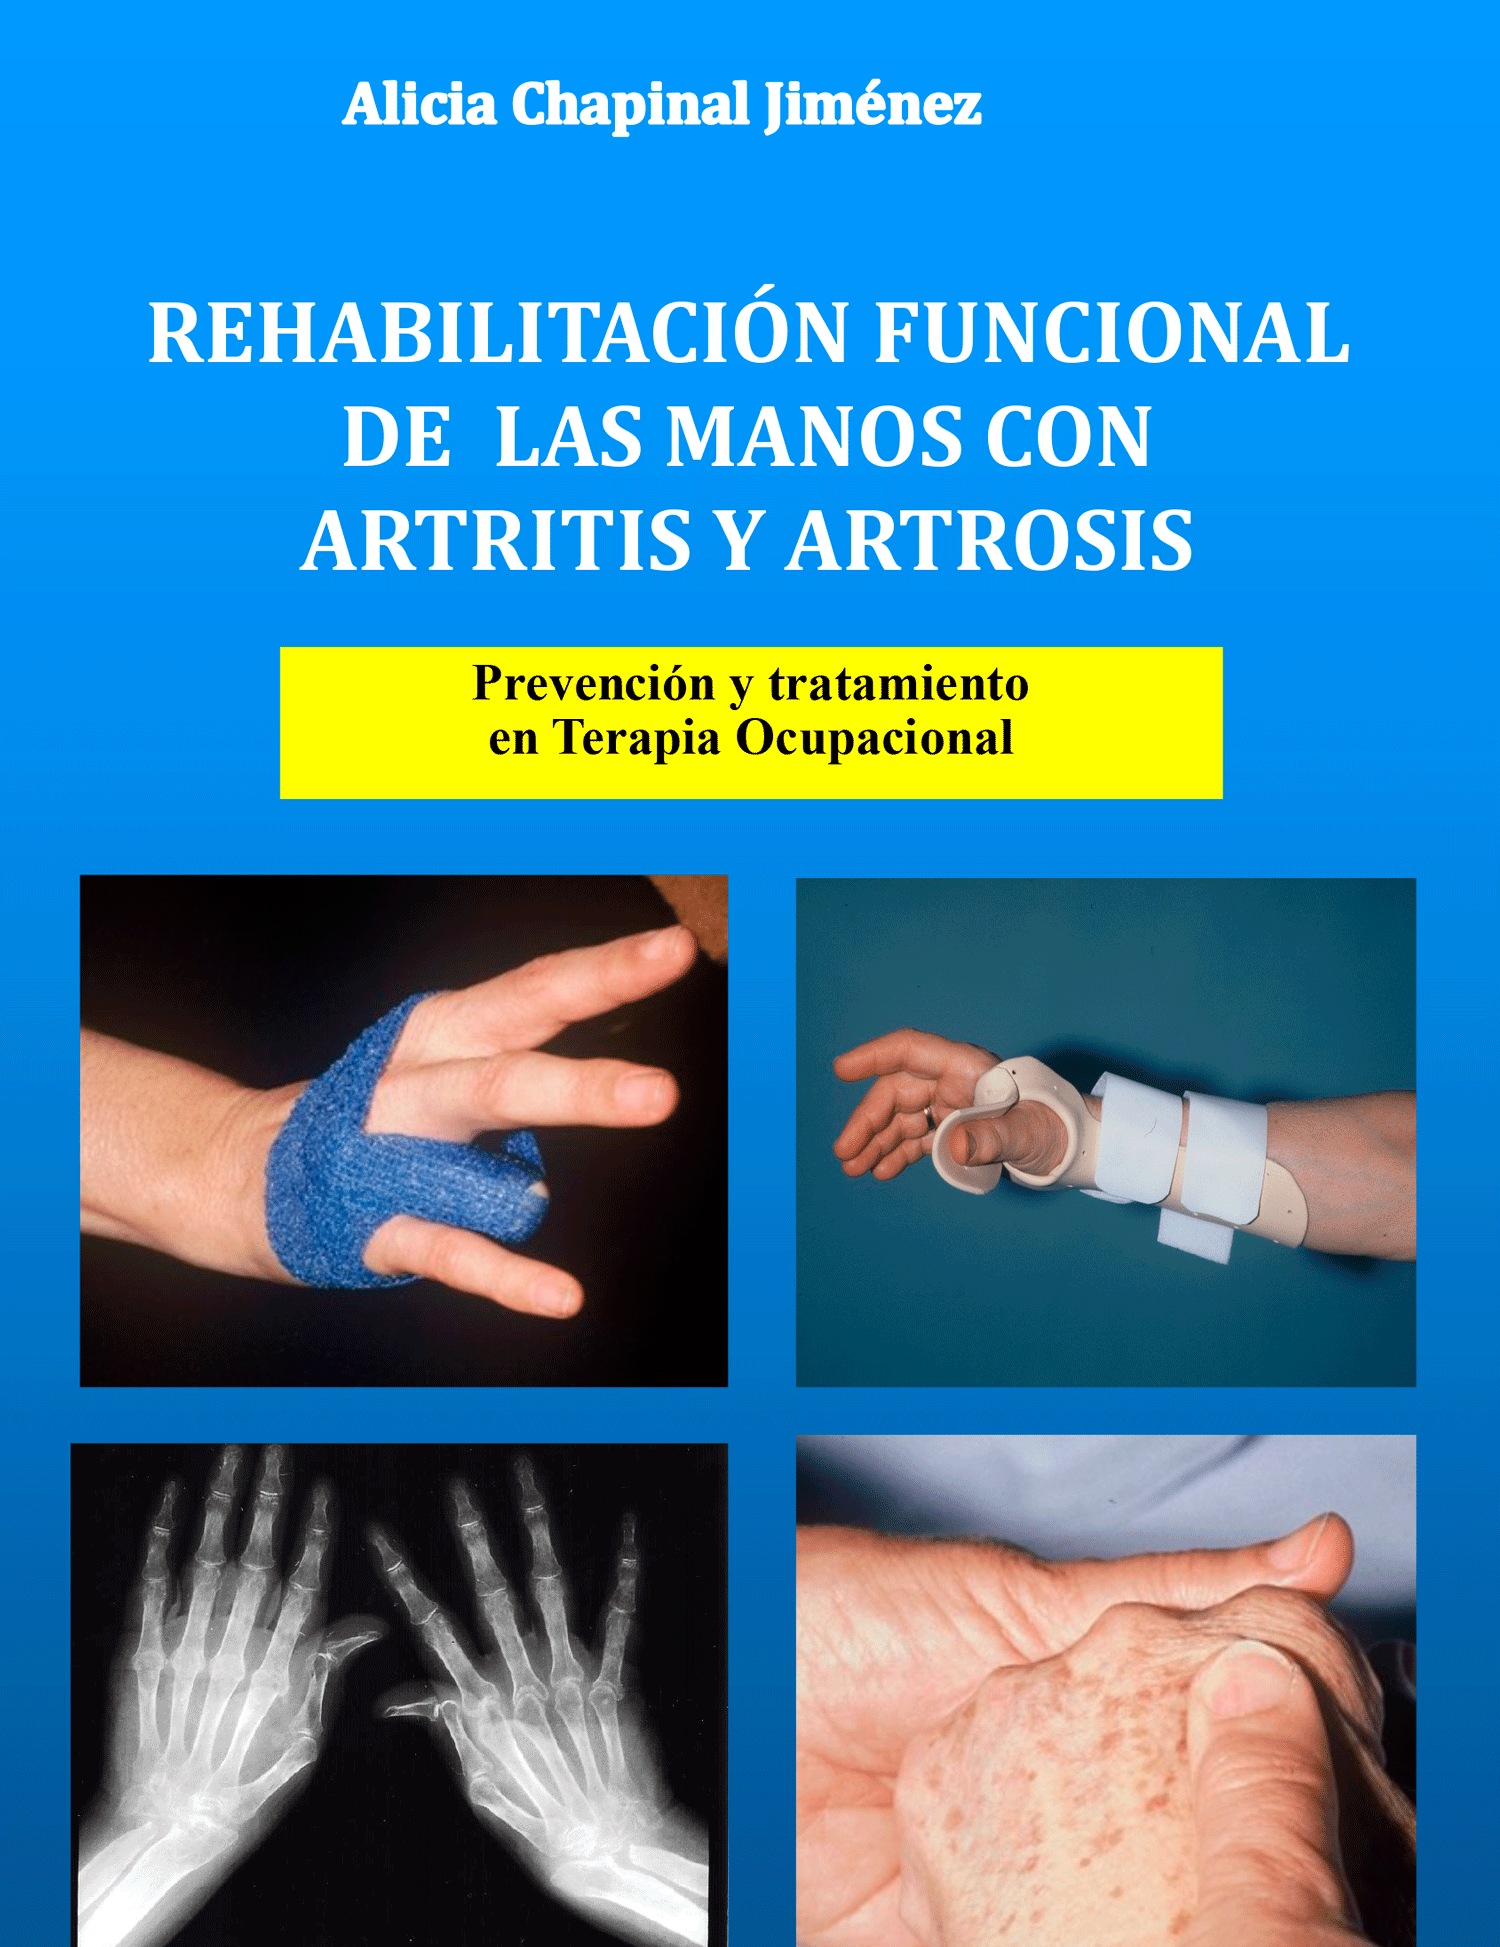 Artrosis o Artritis?: Gimnasia para manos – CDI Marbella